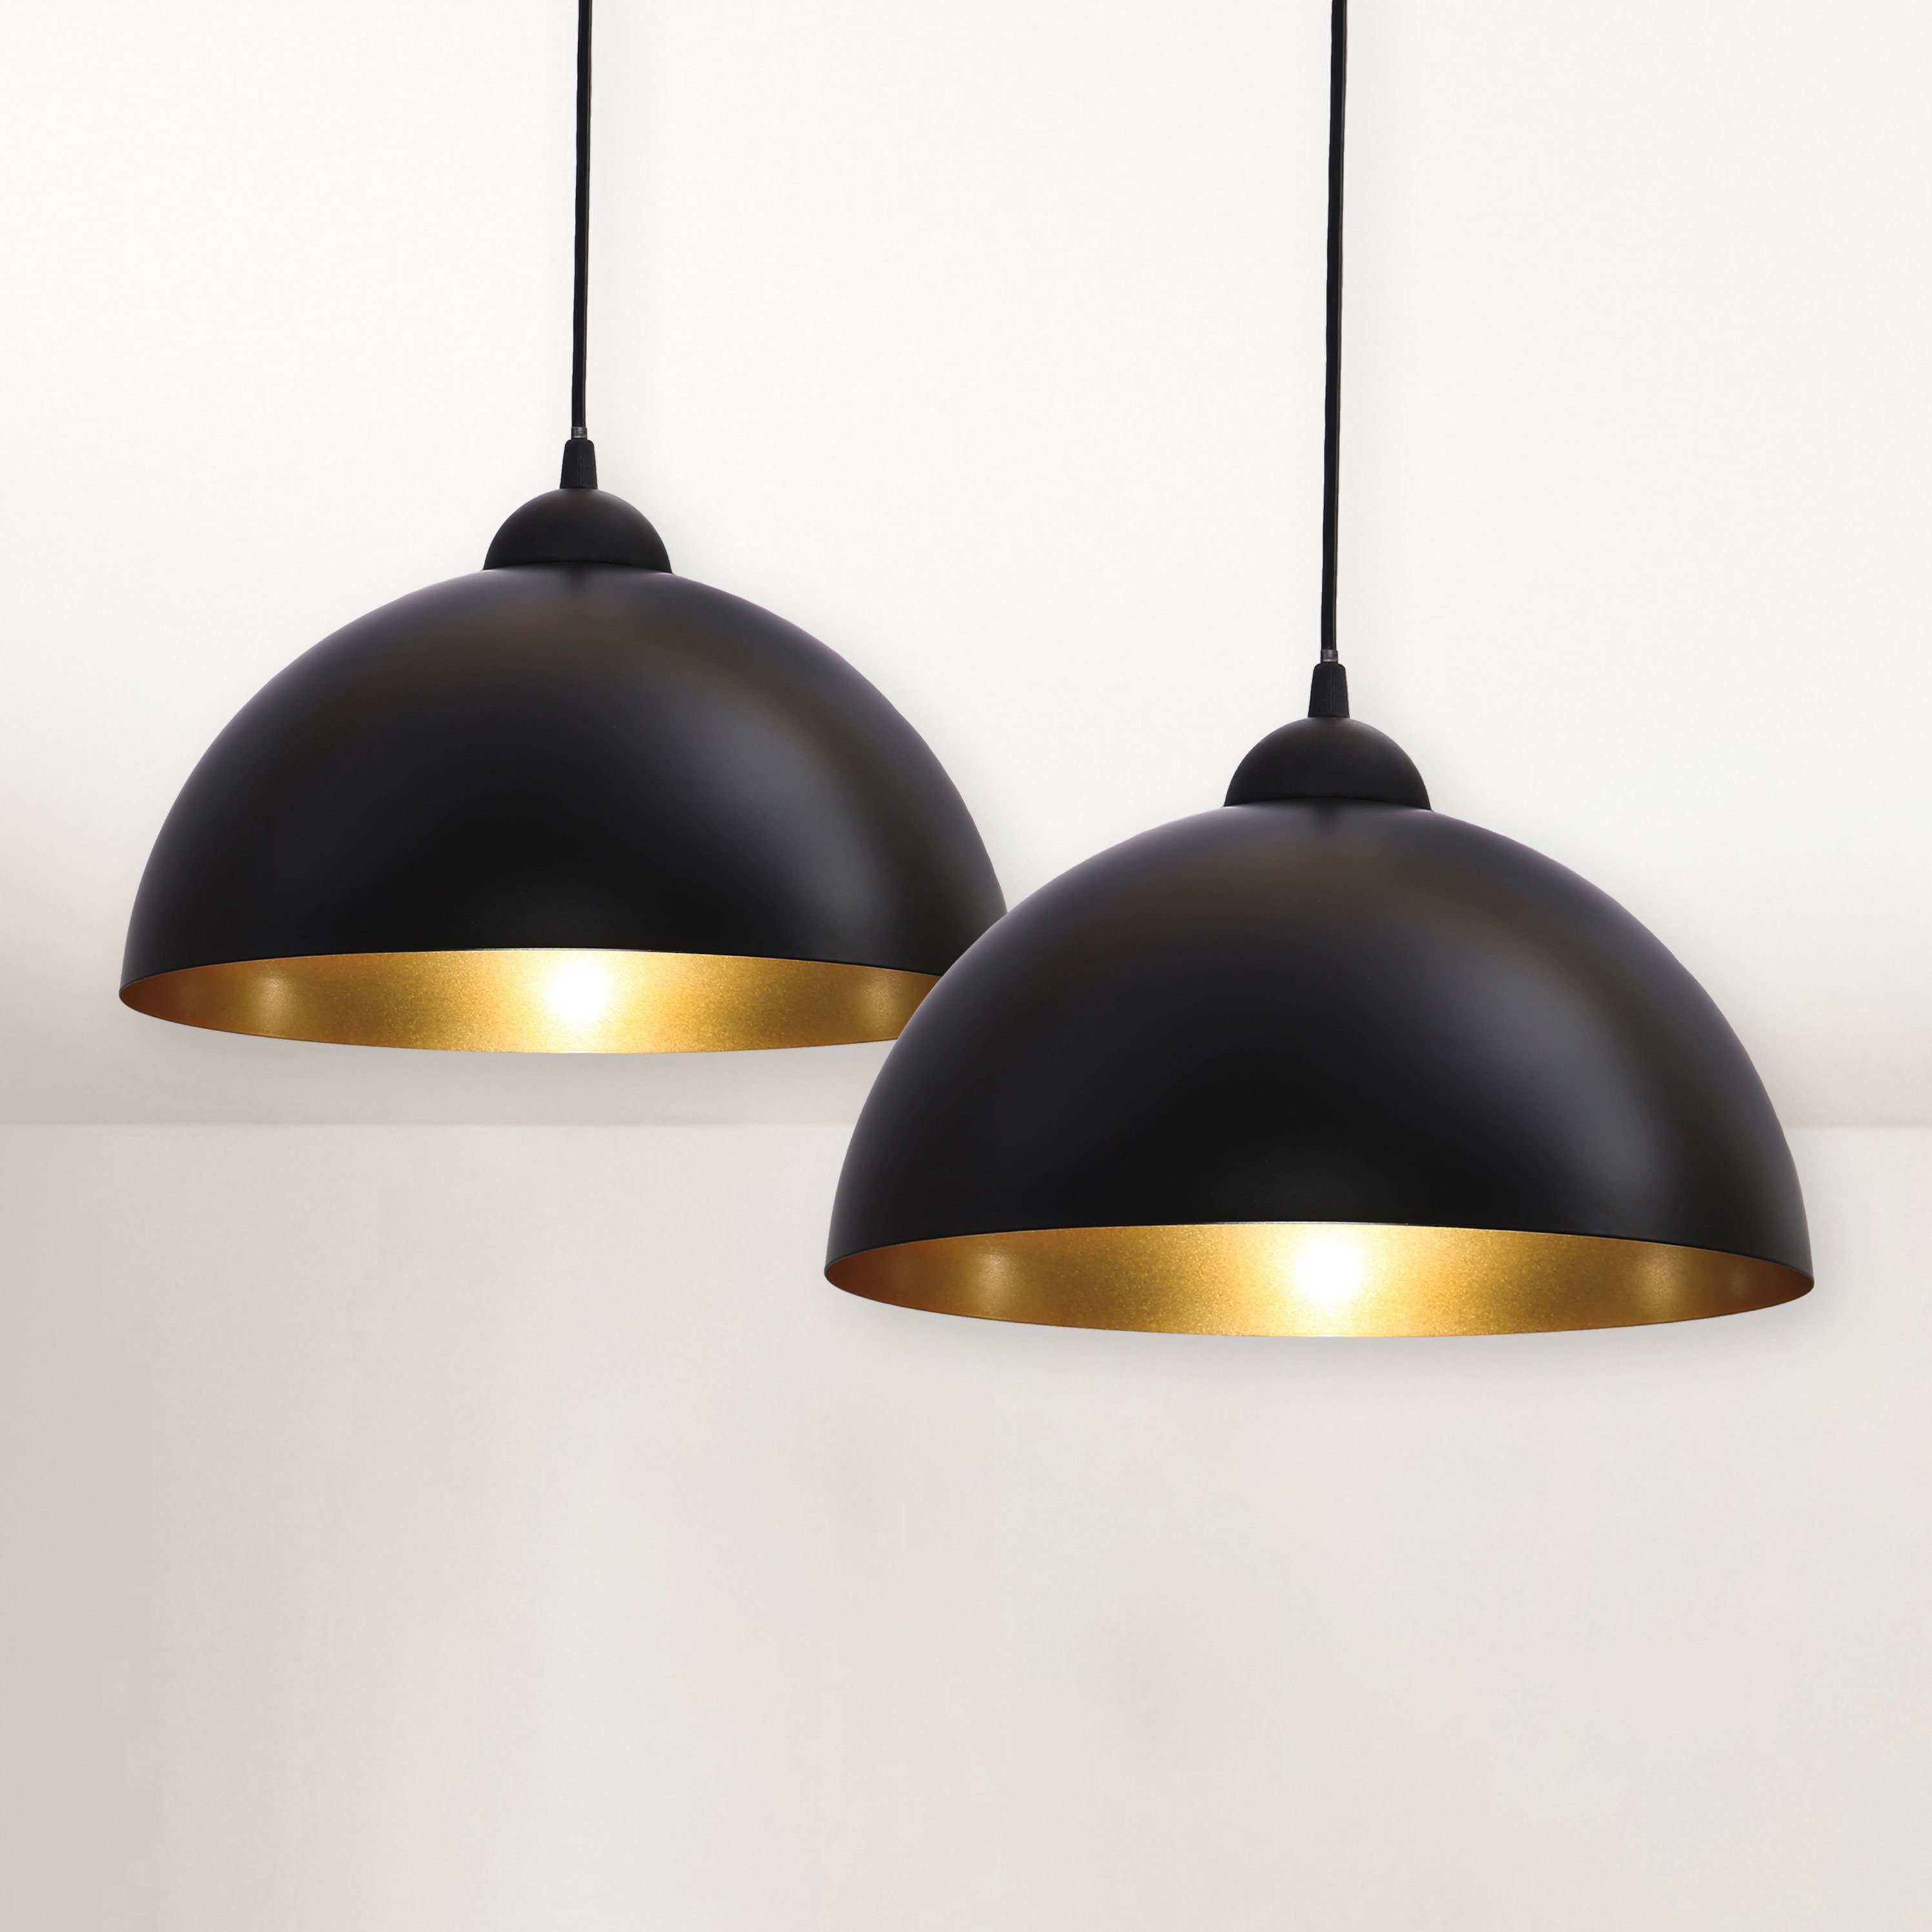 B.K.Licht Pendelleuchte Hänge-Leuchte ohne Design Deckenlampe E27 LED Auriga, Hängelampe Leuchtmittel, schwarz-gold Küche